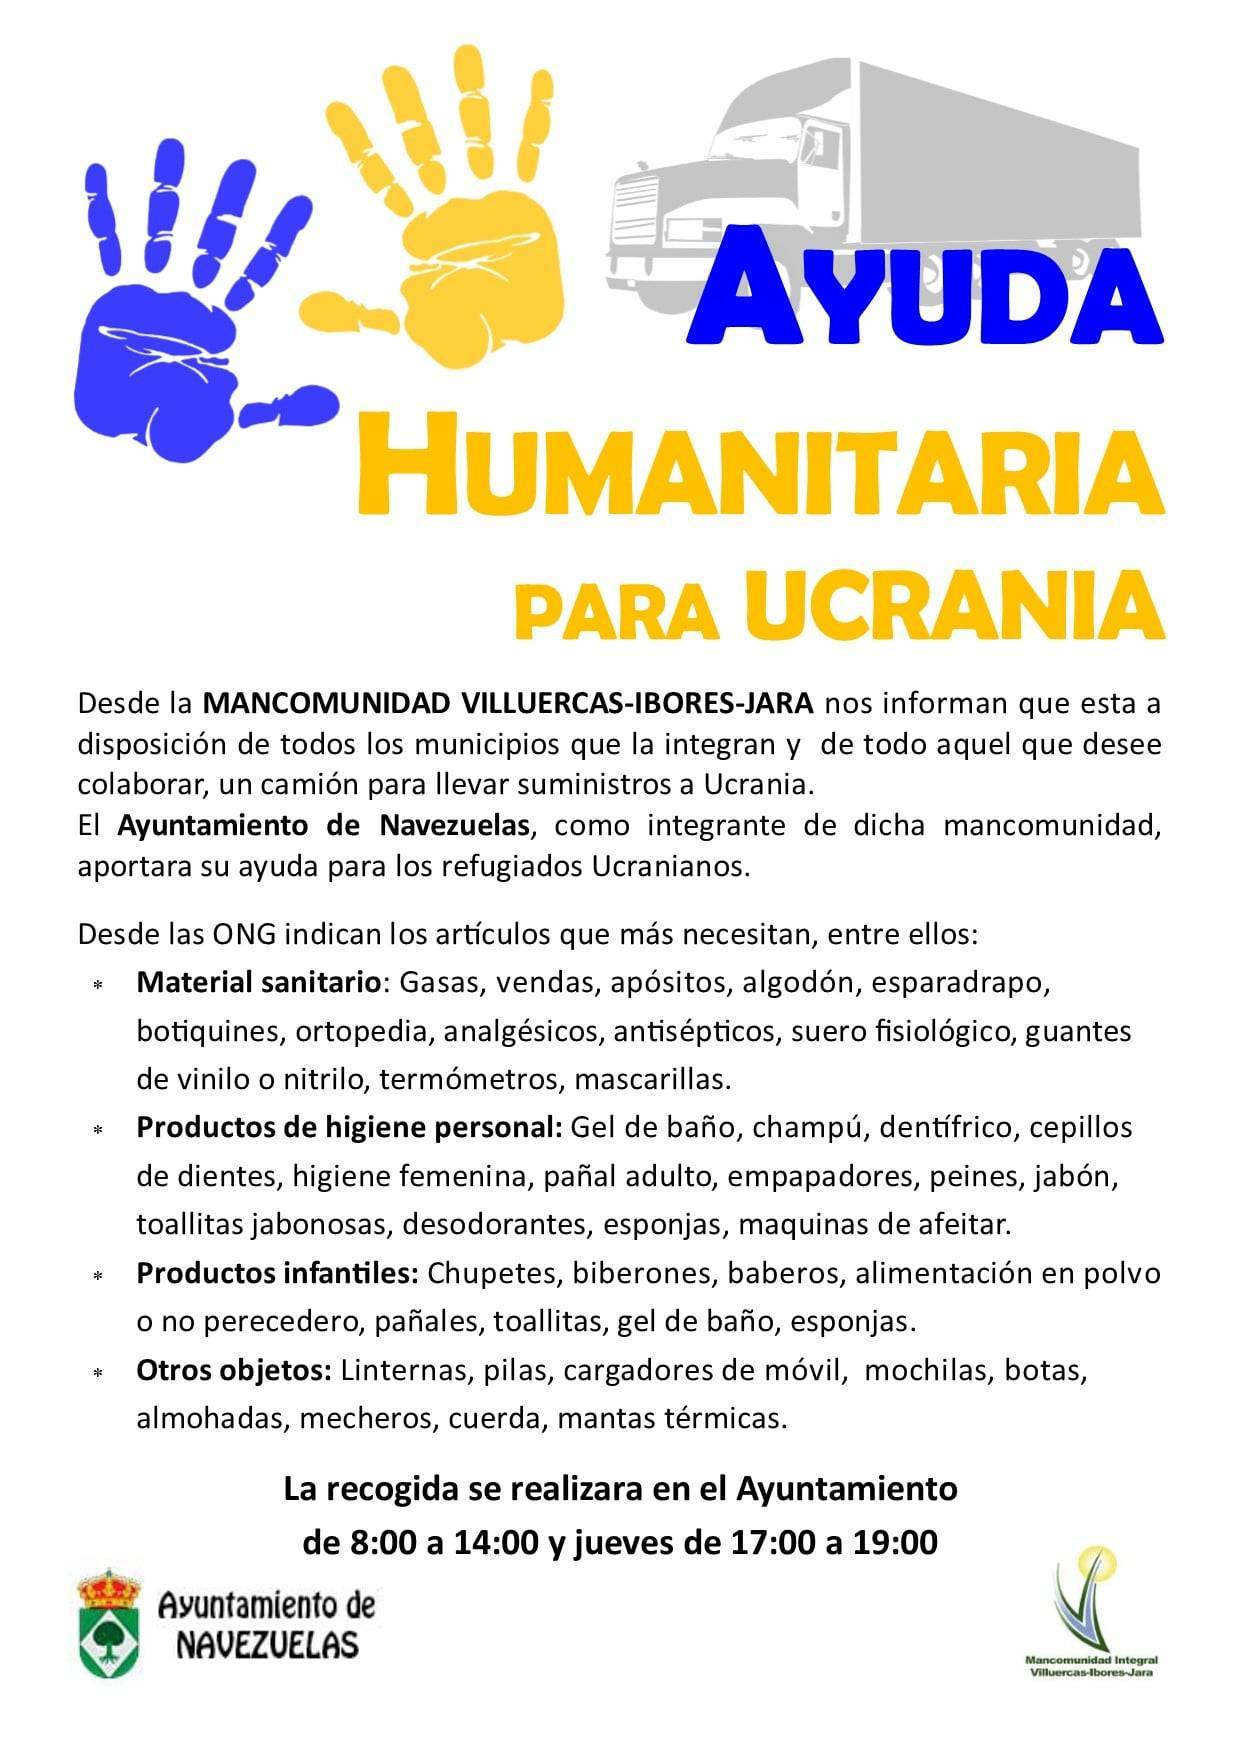 Ayuda humanitaria para Ucrania (2022) - Navezuelas (Cáceres)